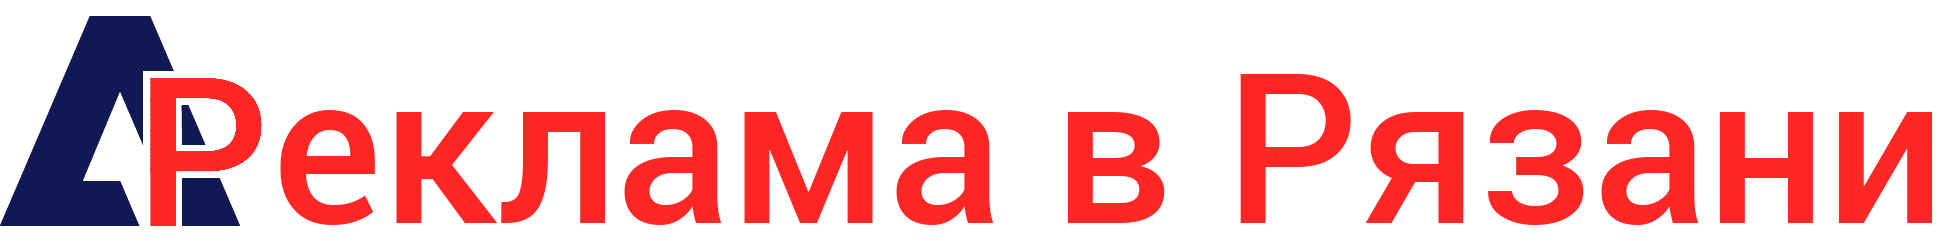 Логотип Реклама в Рязани